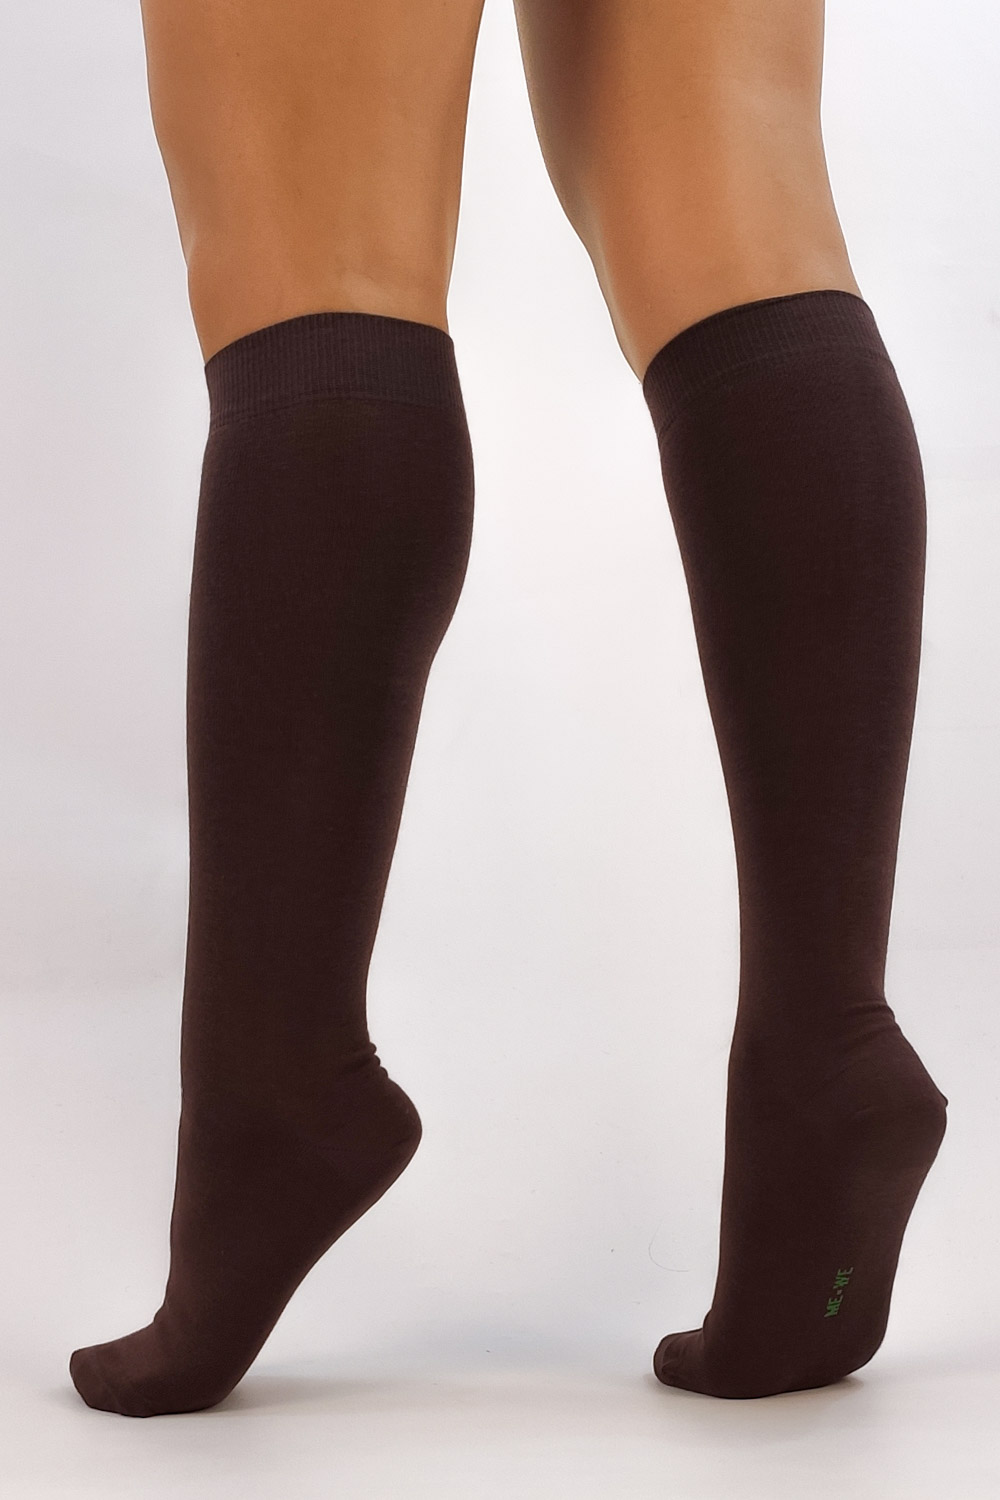 Μακριές μονόχρωμες γυναικείες κάλτσες